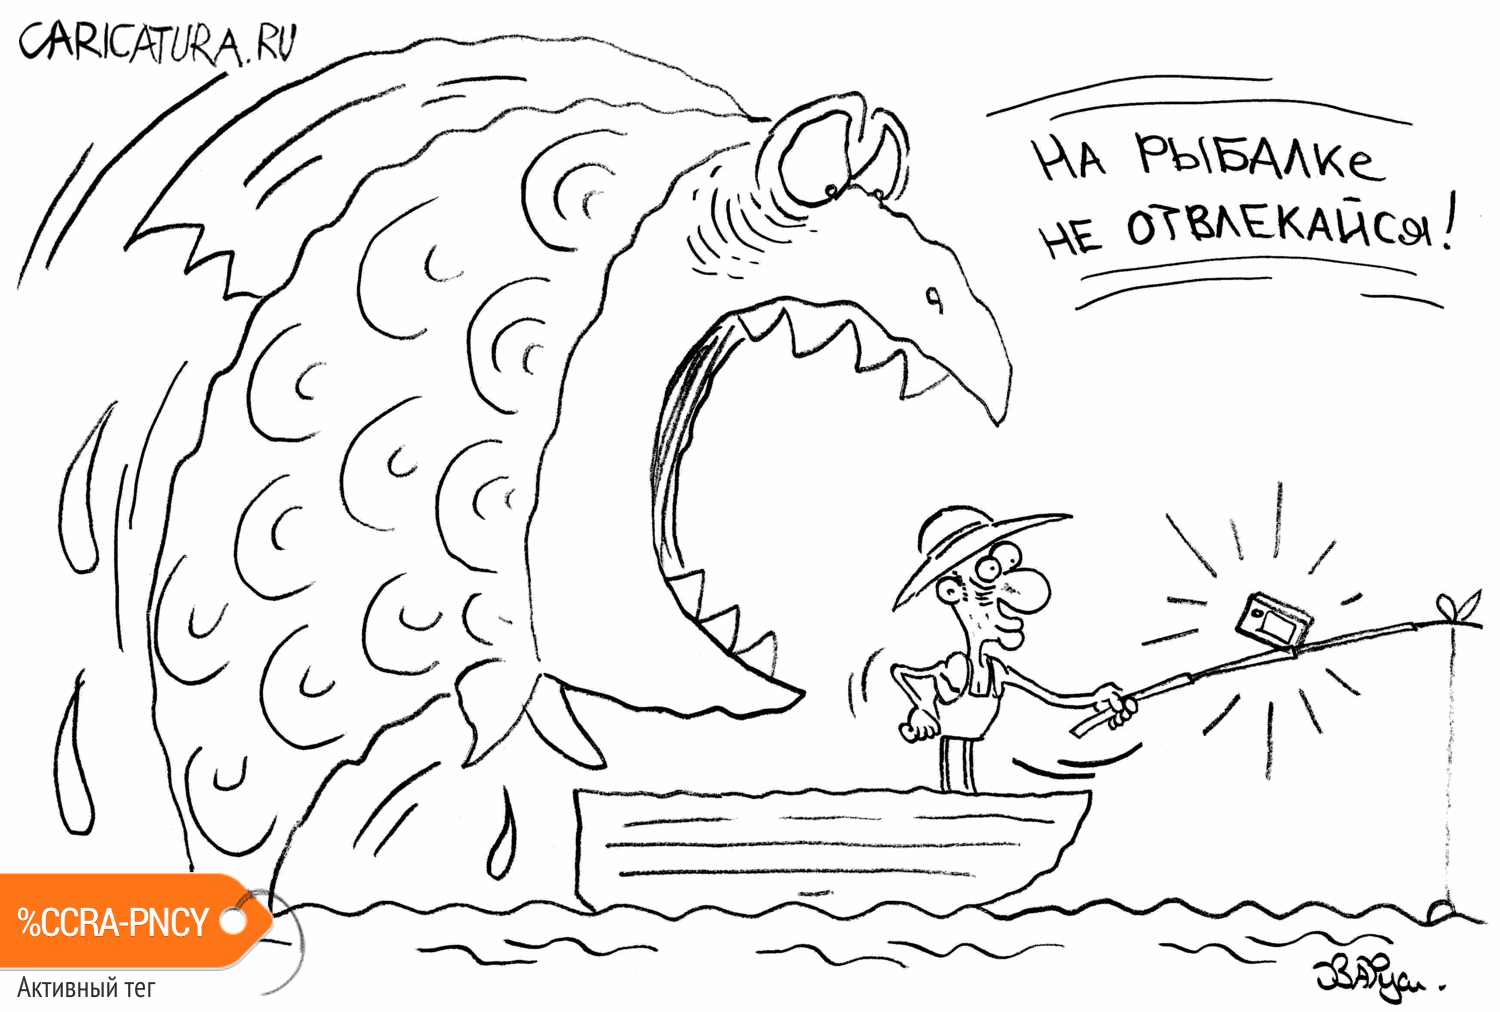 Карикатура "На рыбалке", Руслан Валитов